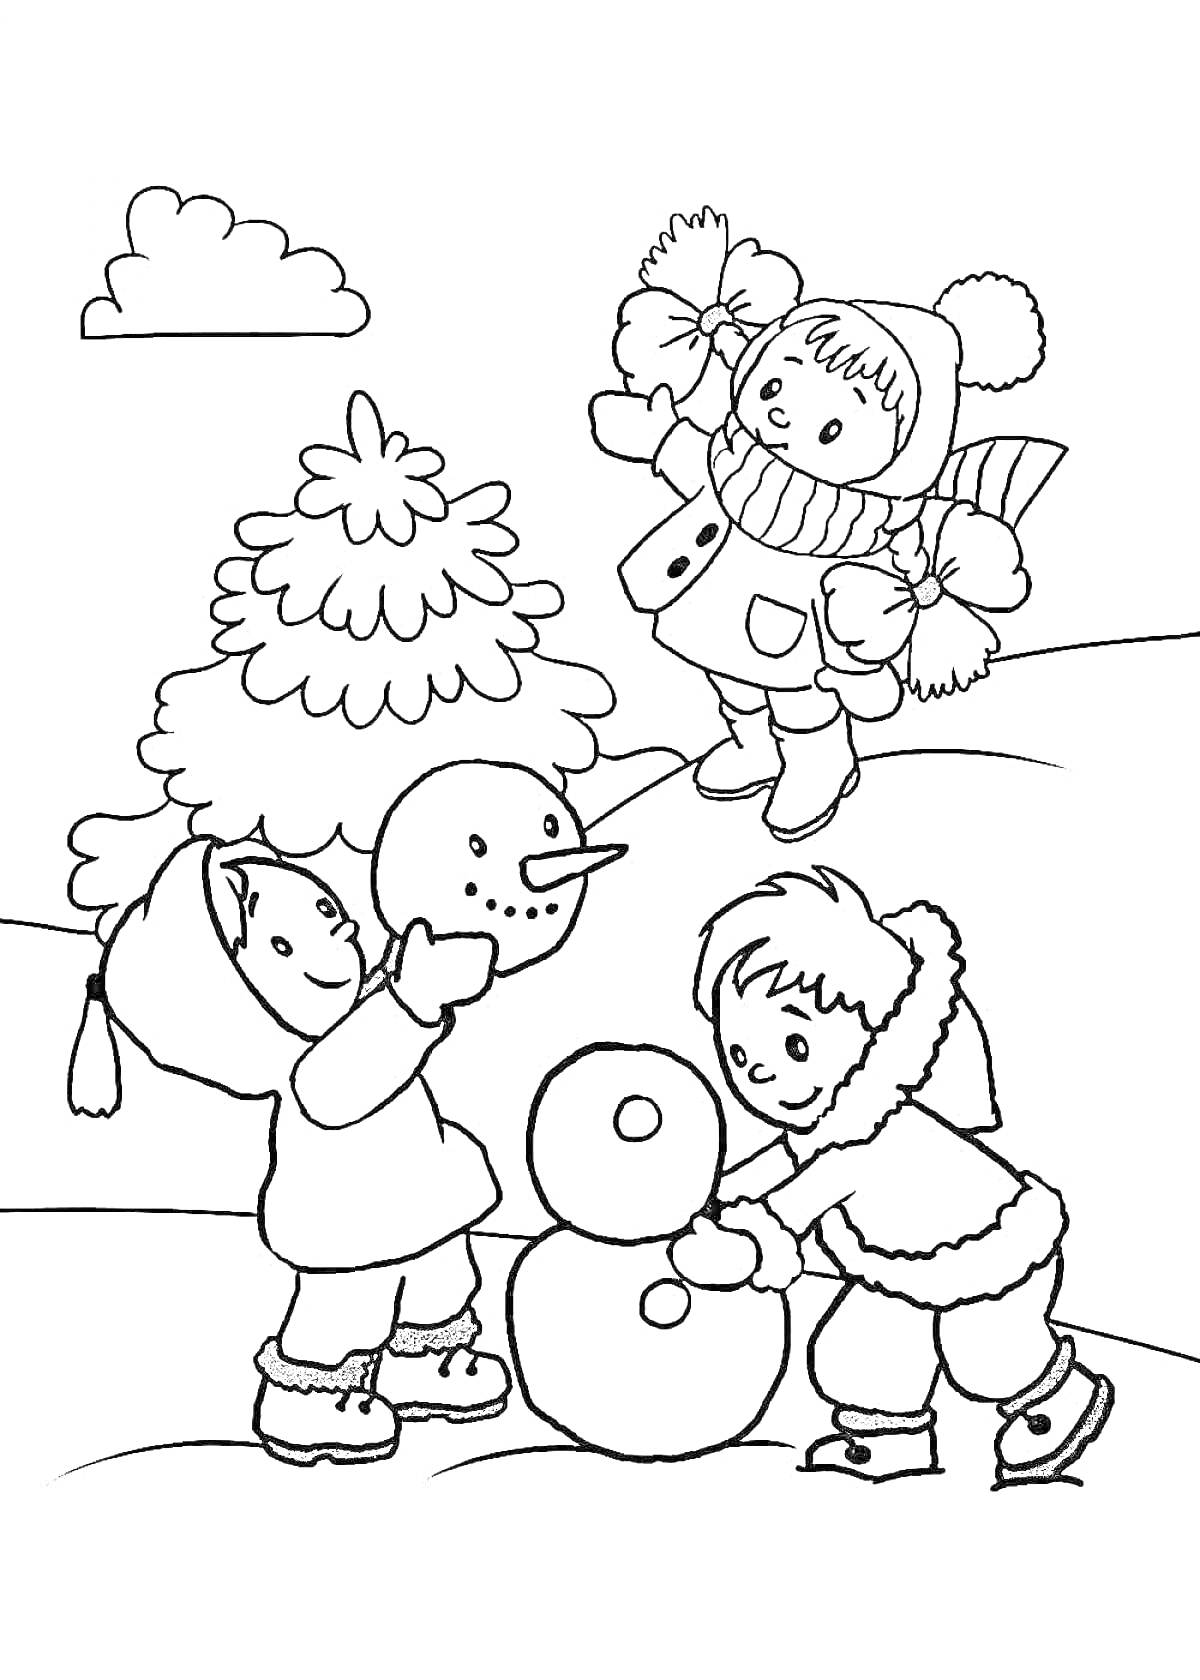 Раскраска Дети лепят снеговика возле ёлки, один ребёнок в стороне с ведром и совком